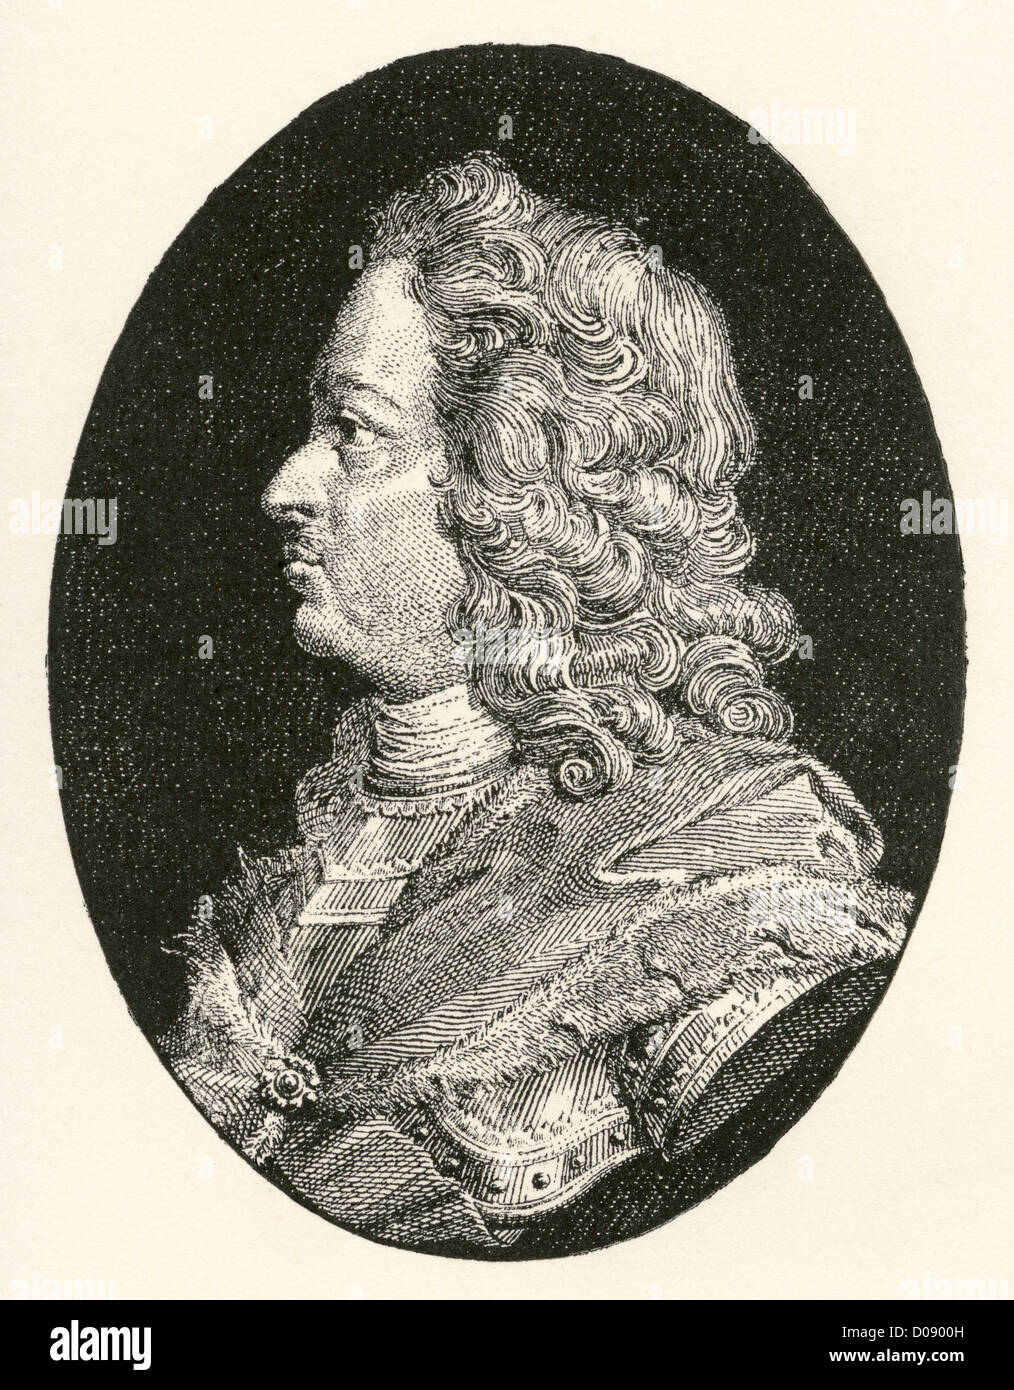 Peter der große, Peter ich oder Pjotr Alexejewitsch Romanow, 1672 – 1725. Zar von Russland. Stockfoto